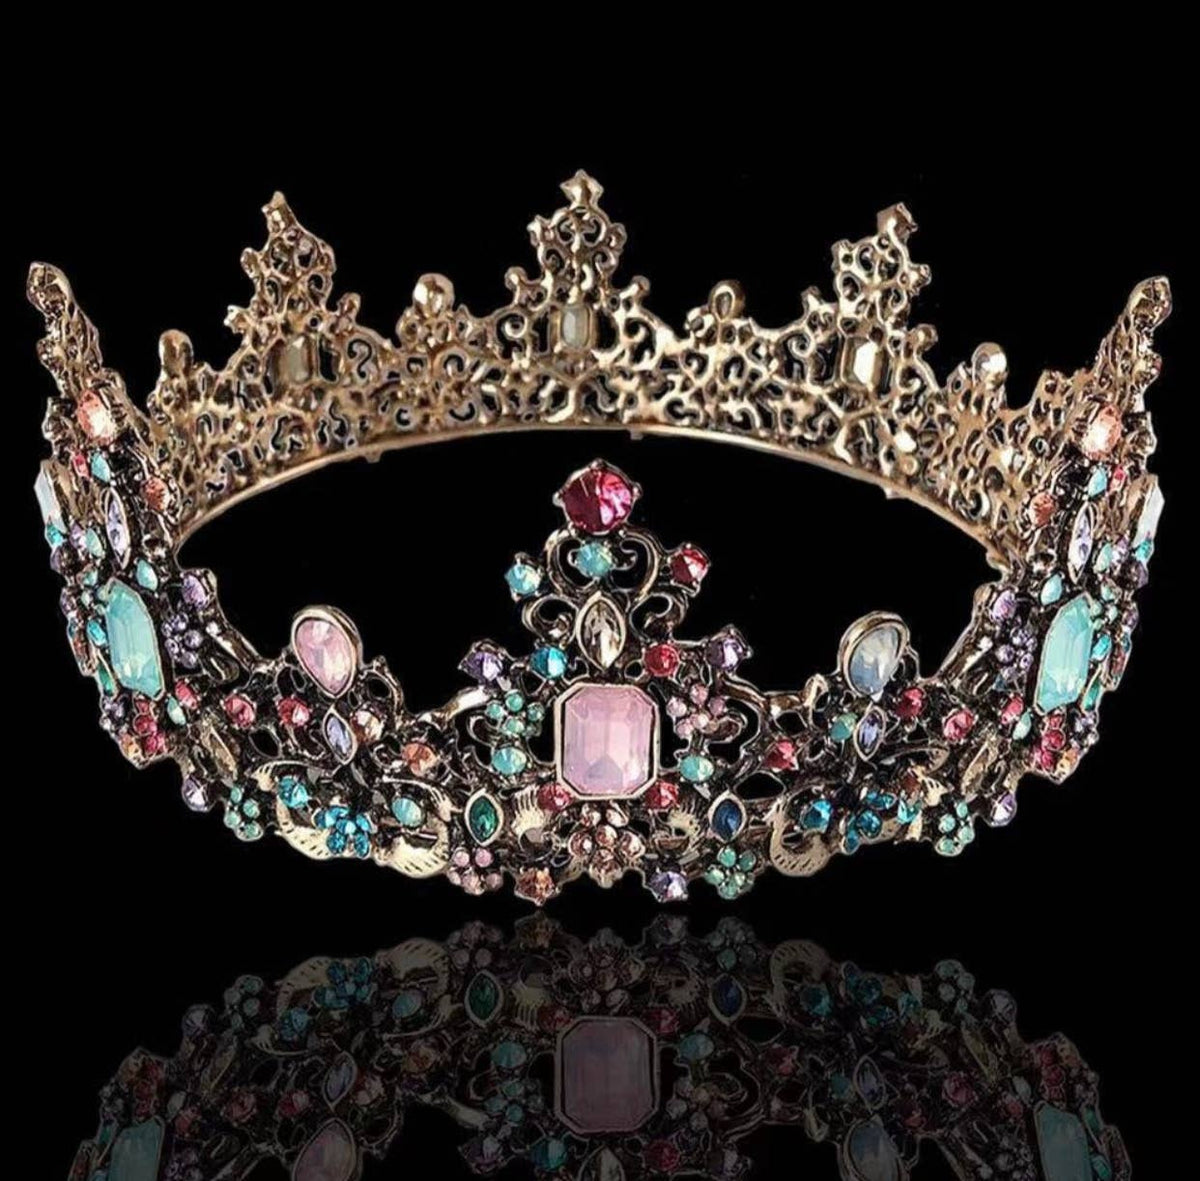 Multicolor Rhinestone Queen Crown